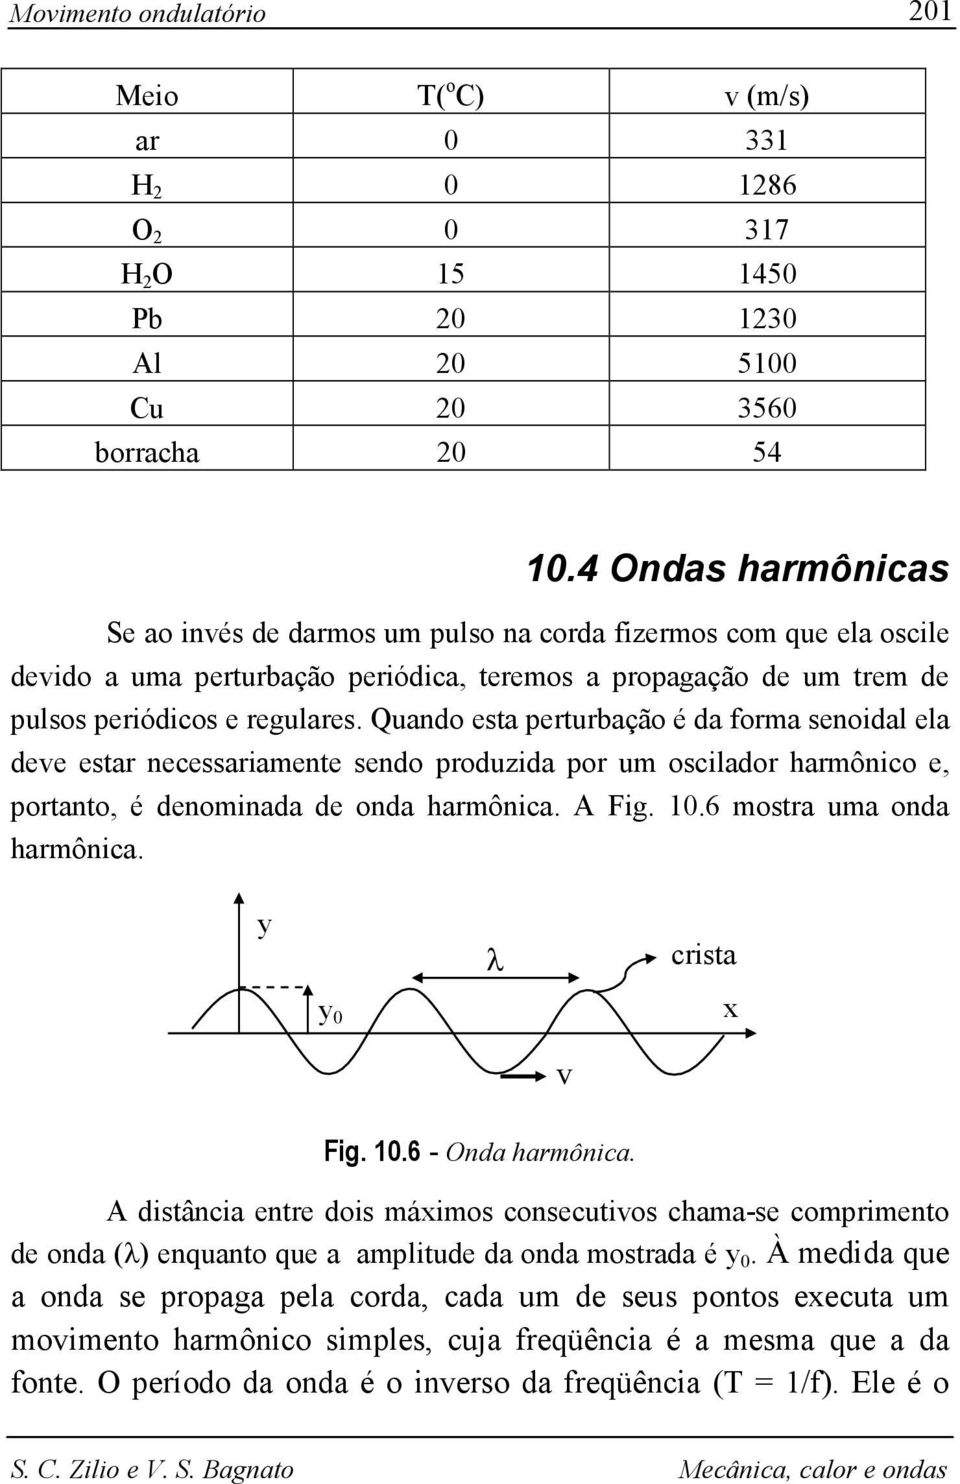 Quando esta perturbação é da forma senoidal ela deve estar necessariamente sendo produzida por um oscilador harmônico e, portanto, é denominada de onda harmônica. A Fig. 1.6 mostra uma onda harmônica.